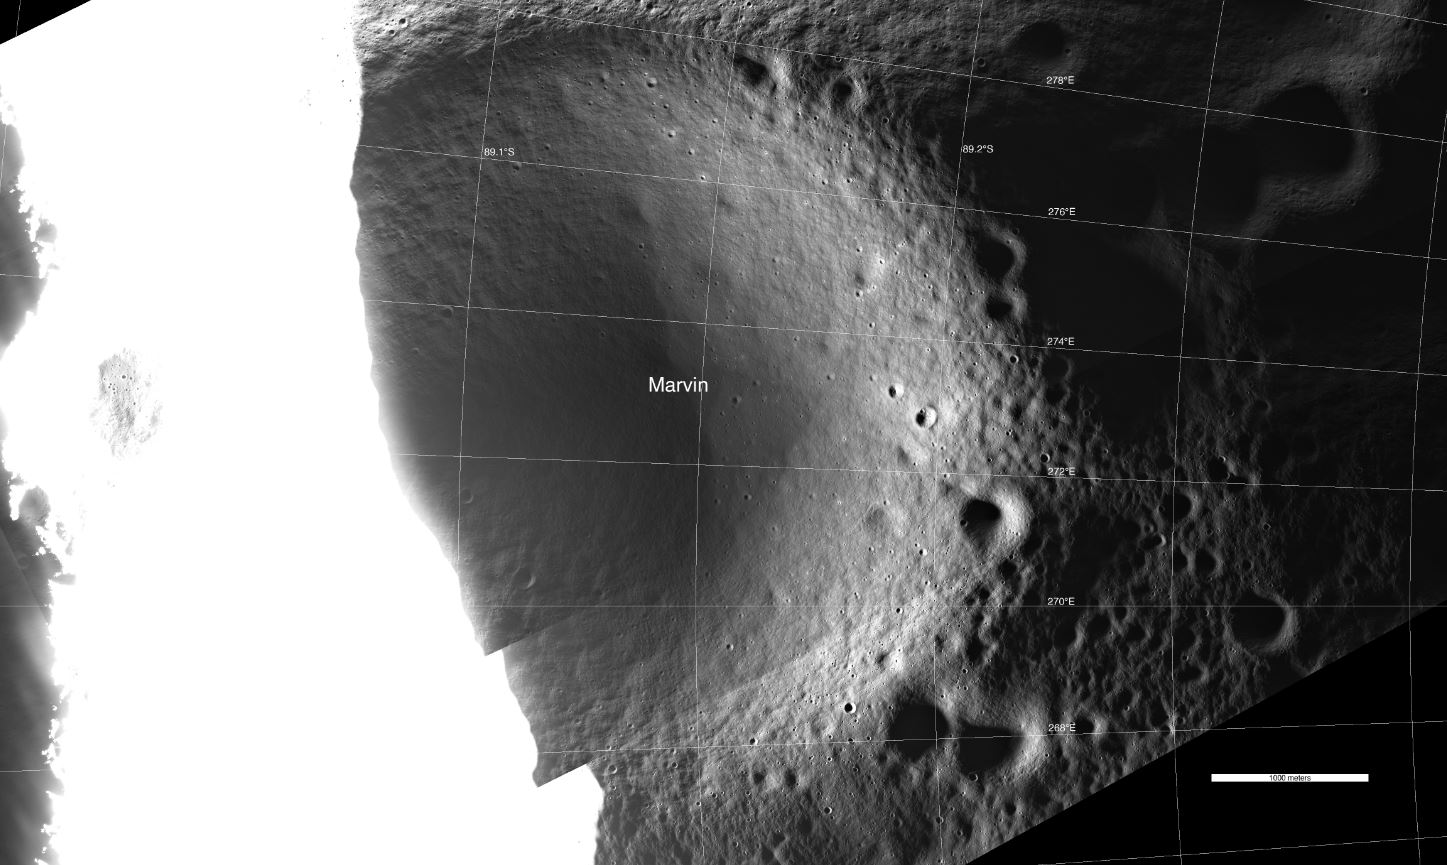 El cráter Marvin fue fotografiado usando luz reflejada en comparación con el entorno inundado con luz solar directa.